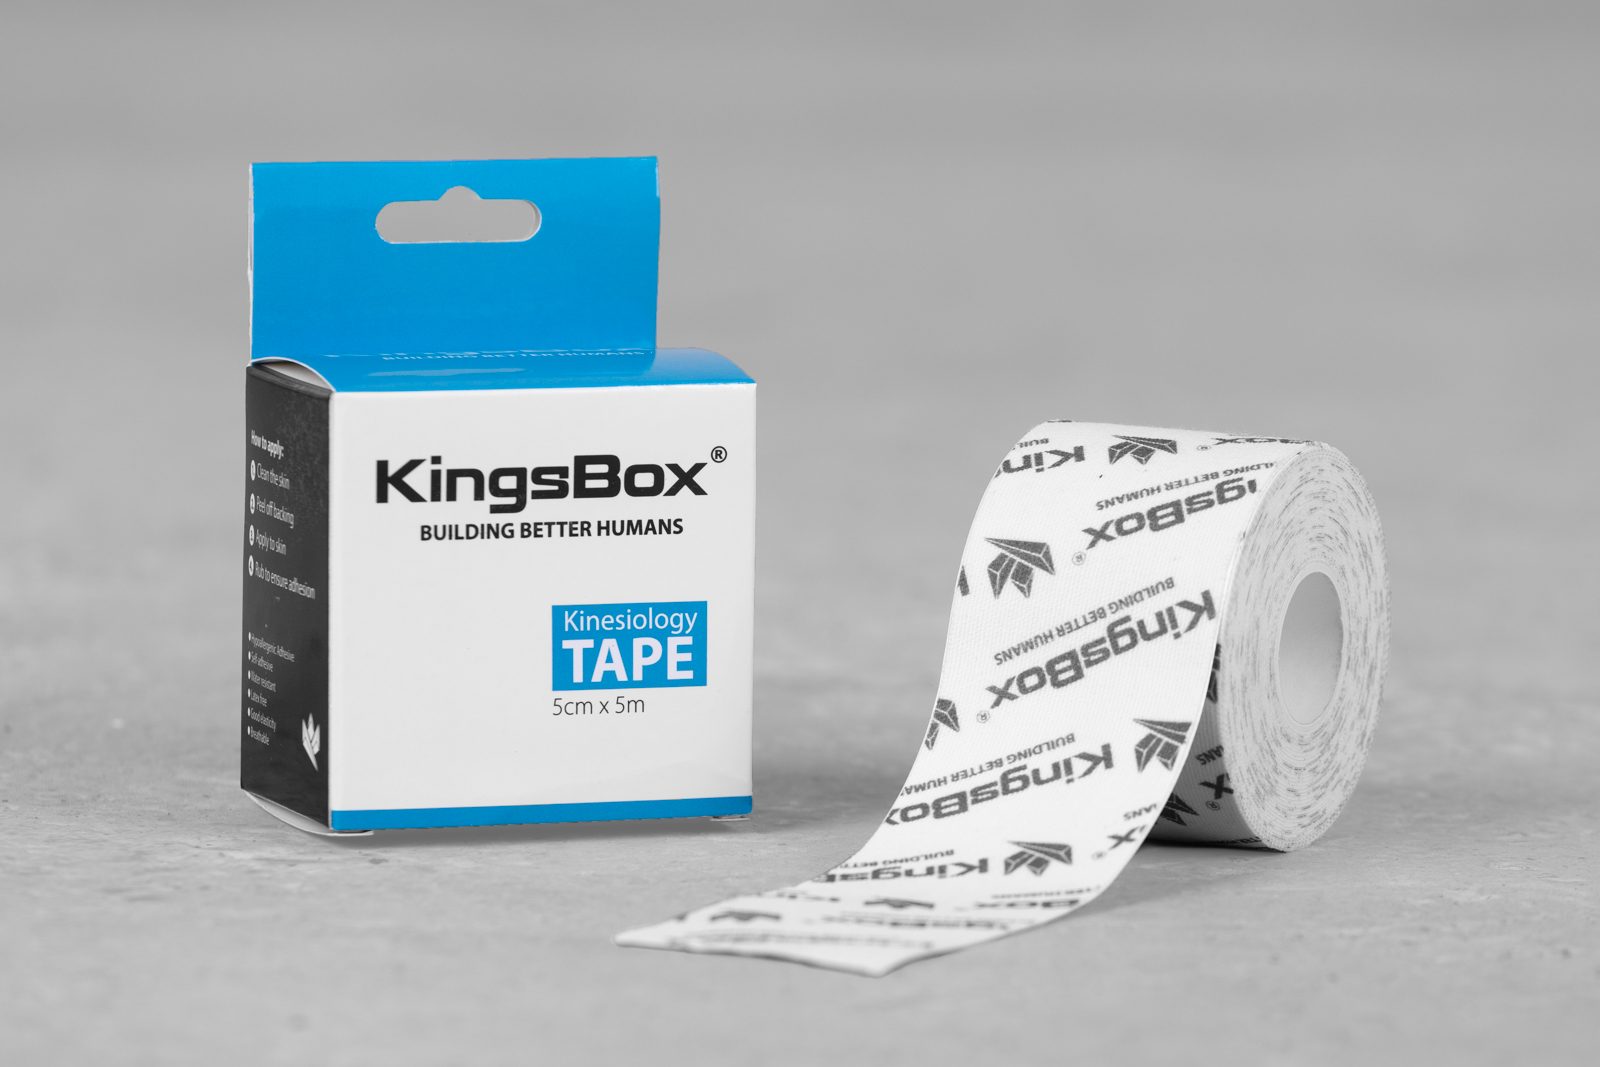 KingsBox Kinesiology Tape